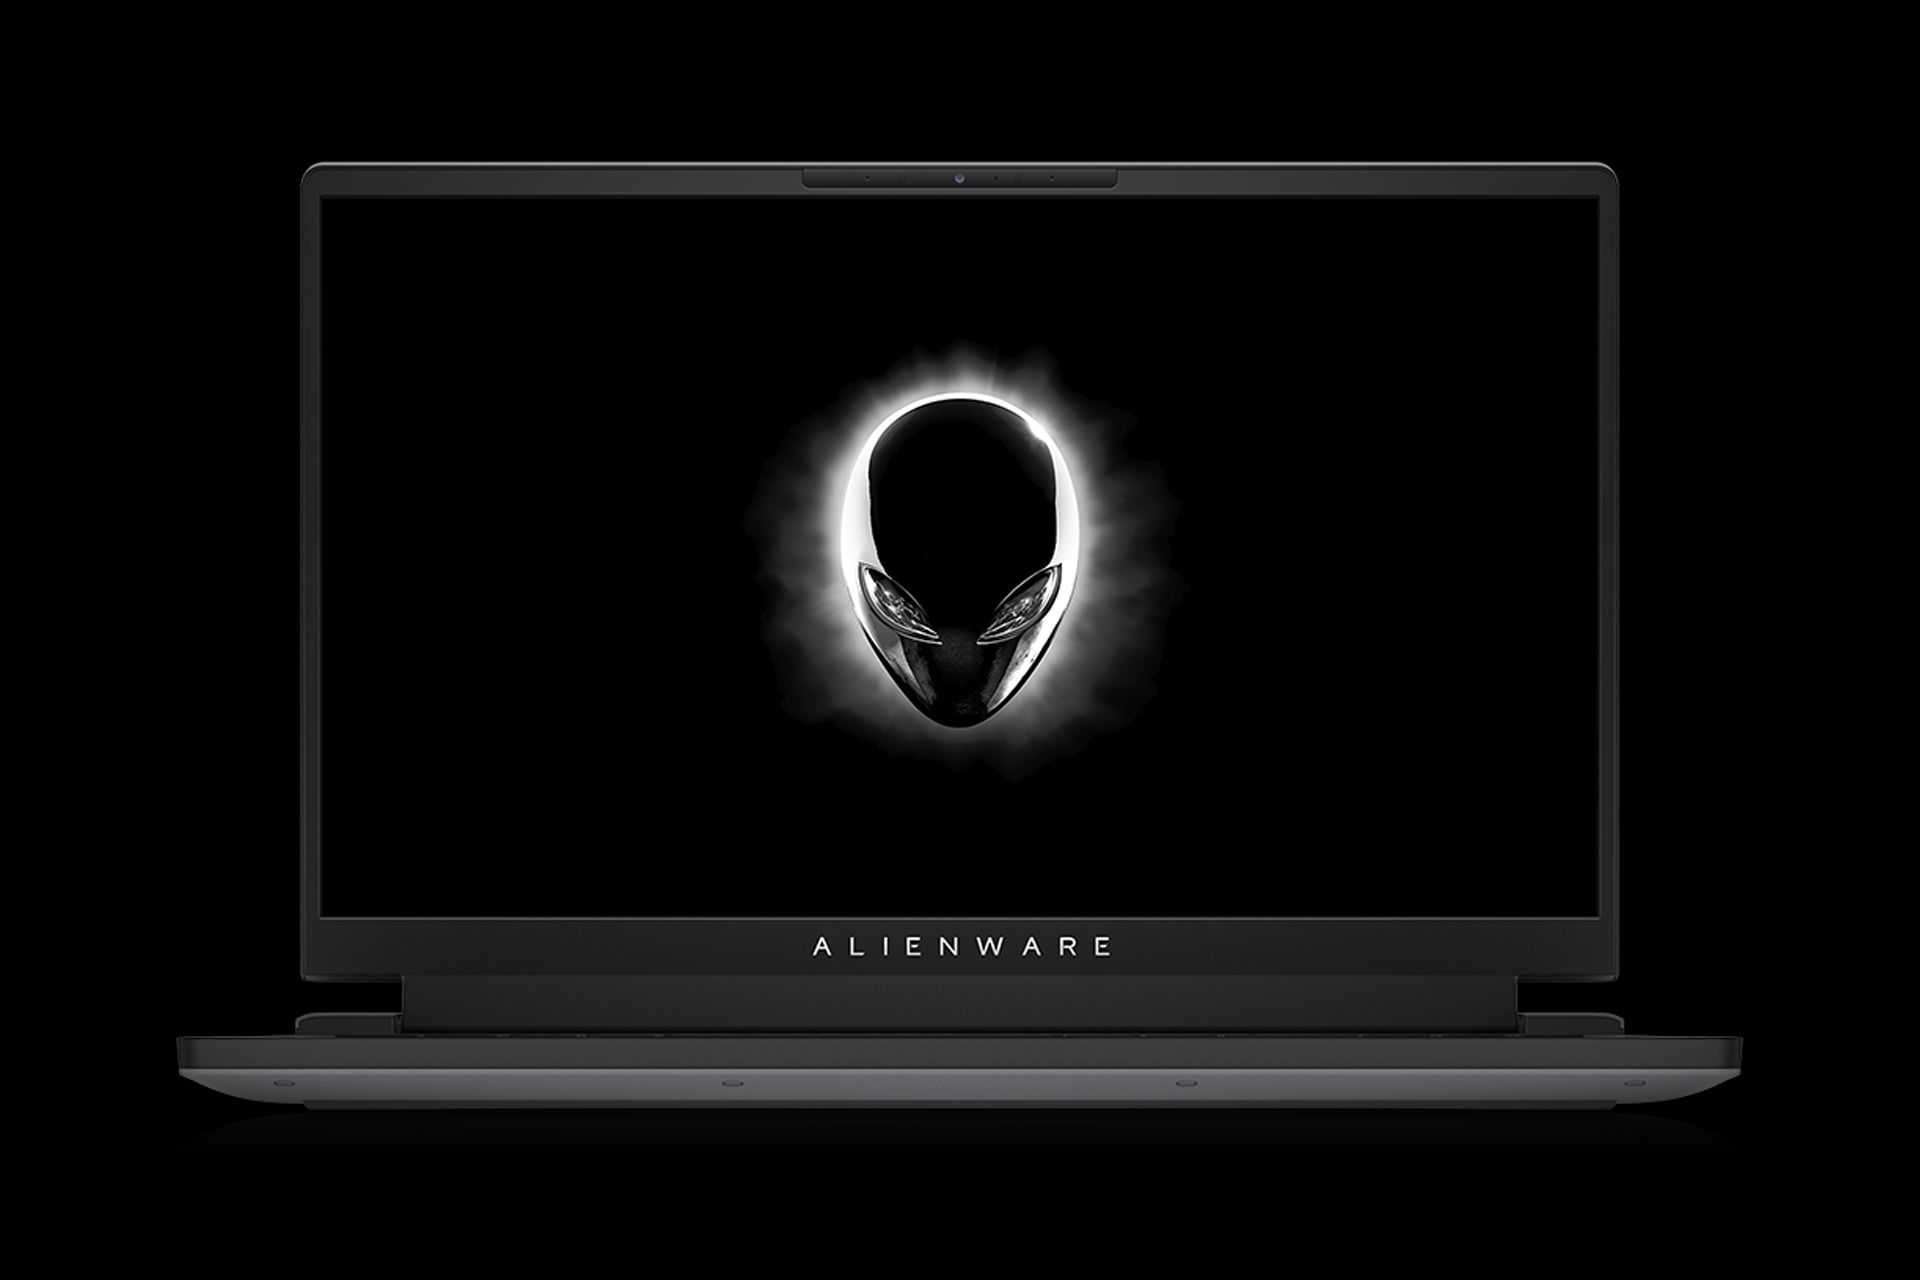 لپ تاپ Alienware m15 R6 الین ور از نمای جلو